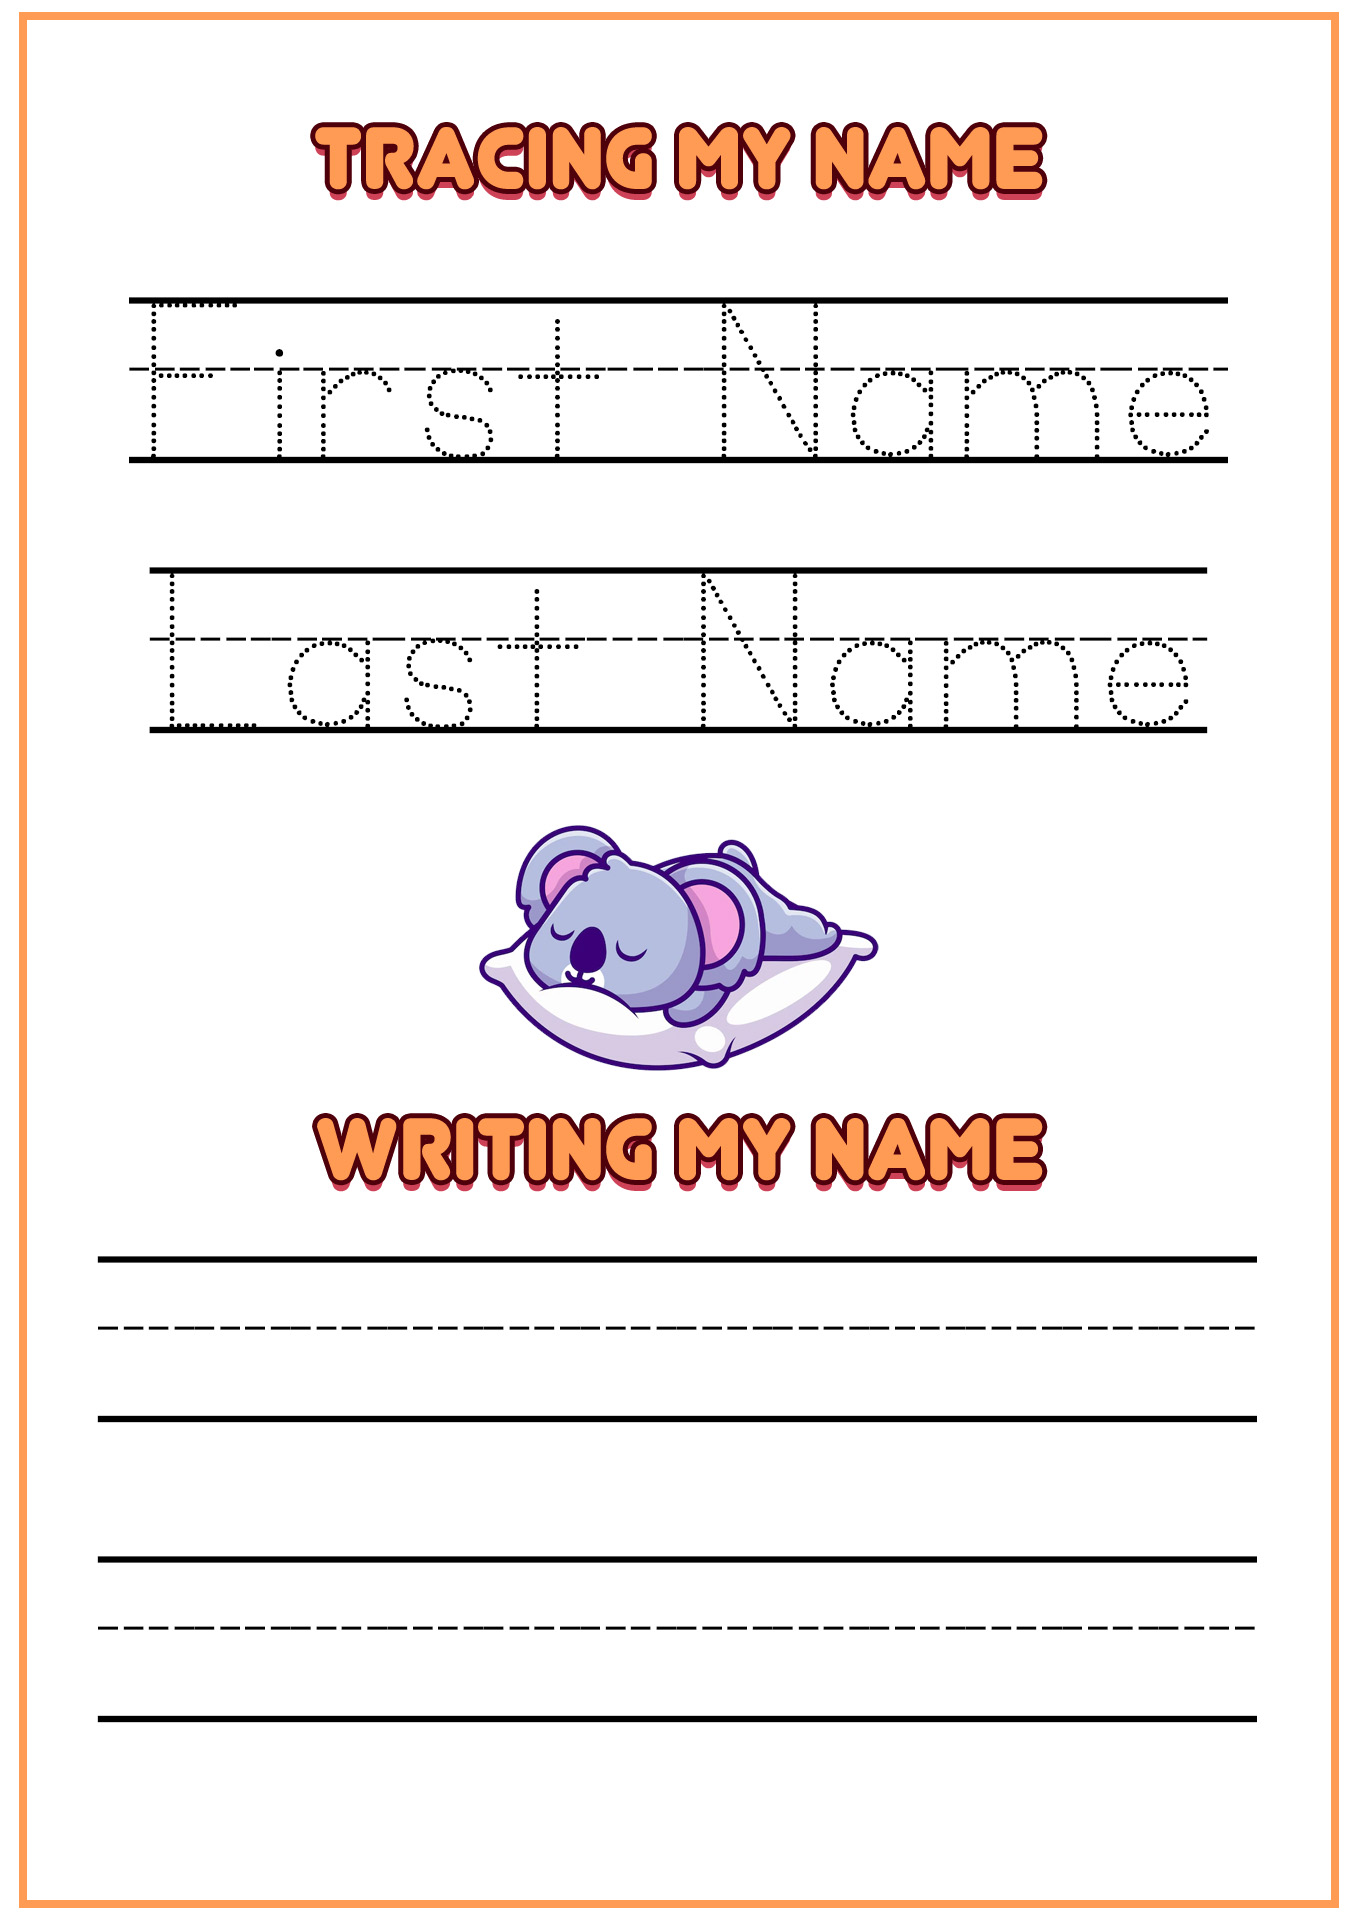 Write My Name Worksheet Image